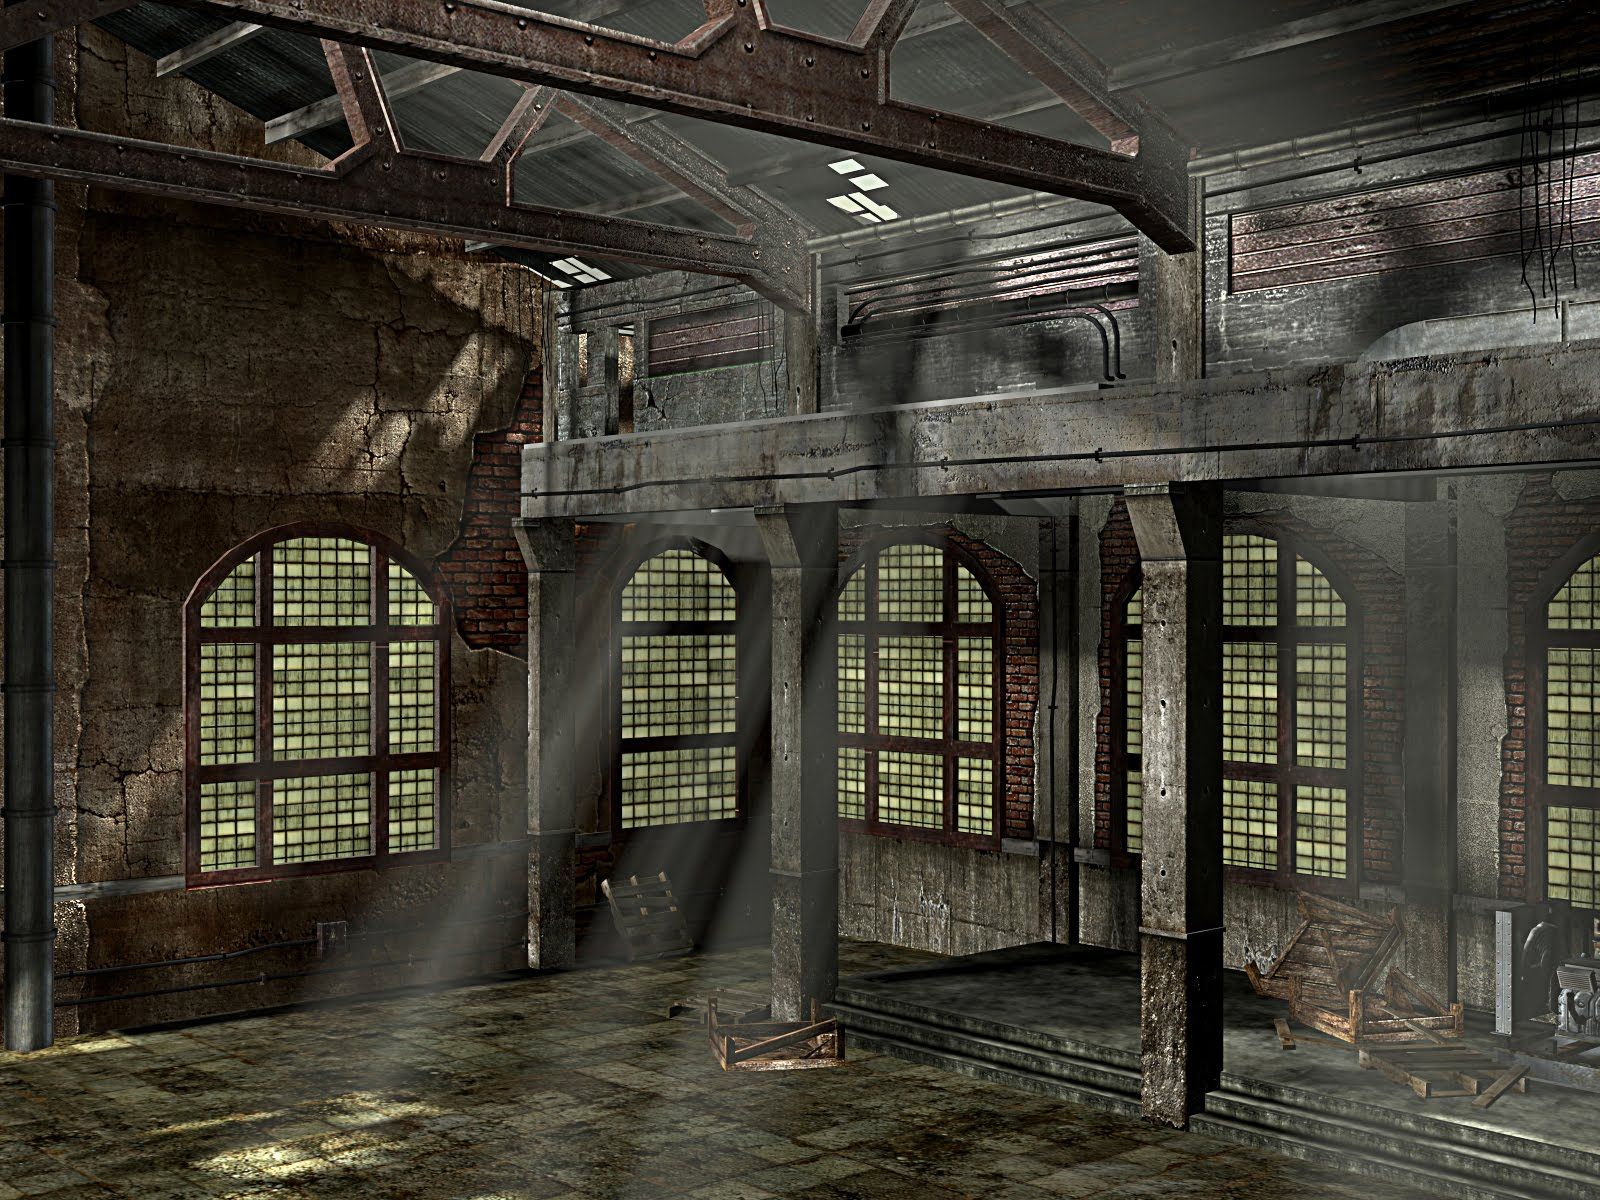 Old Abandoned Factory | abandoned | Pinterest | Abandoned